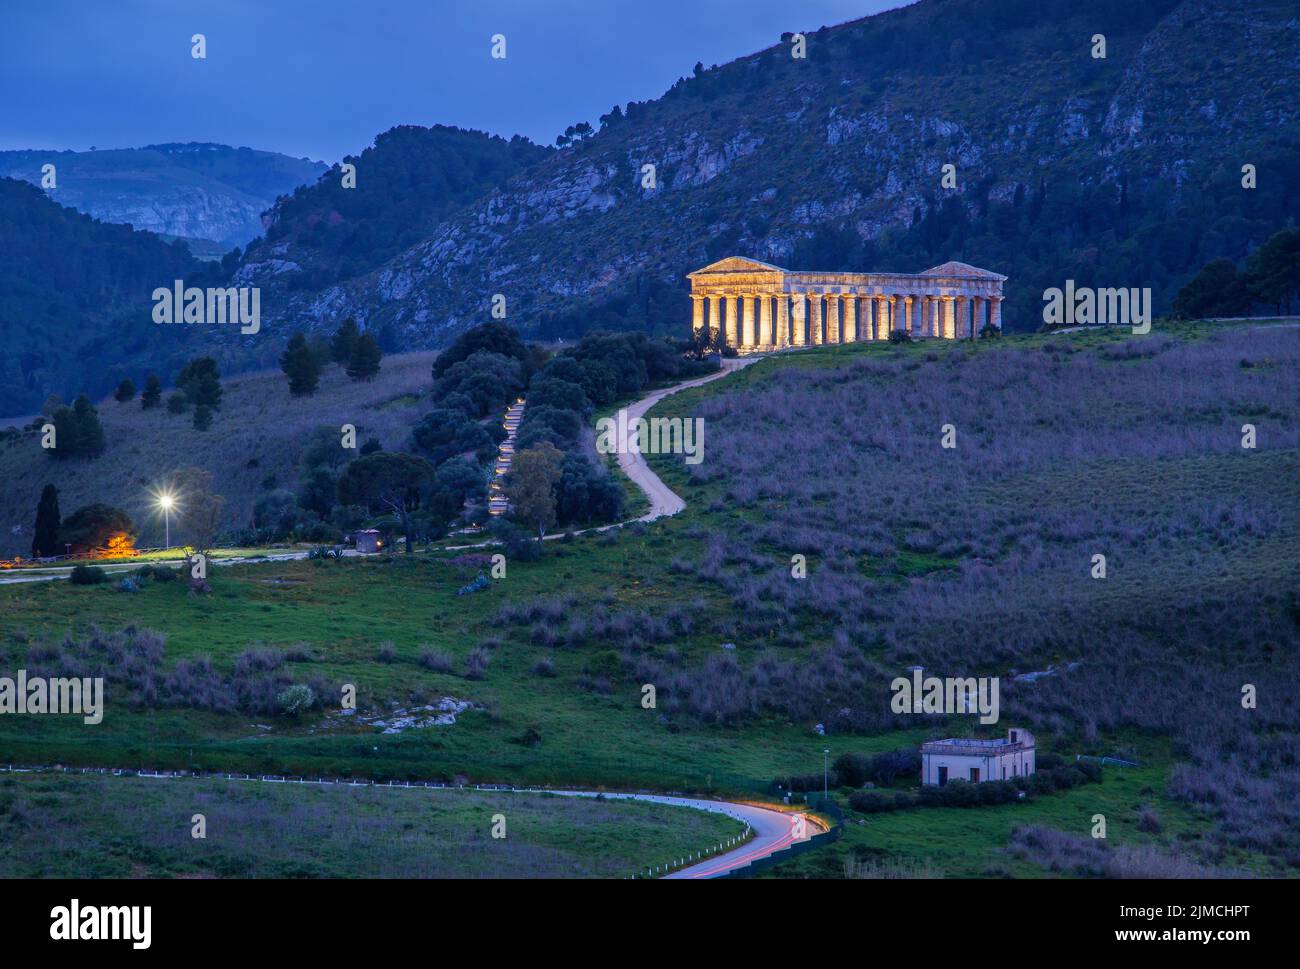 Temple of Segesta at dusk, Calatafimi, Northwest, Sicily, Italy Stock Photo